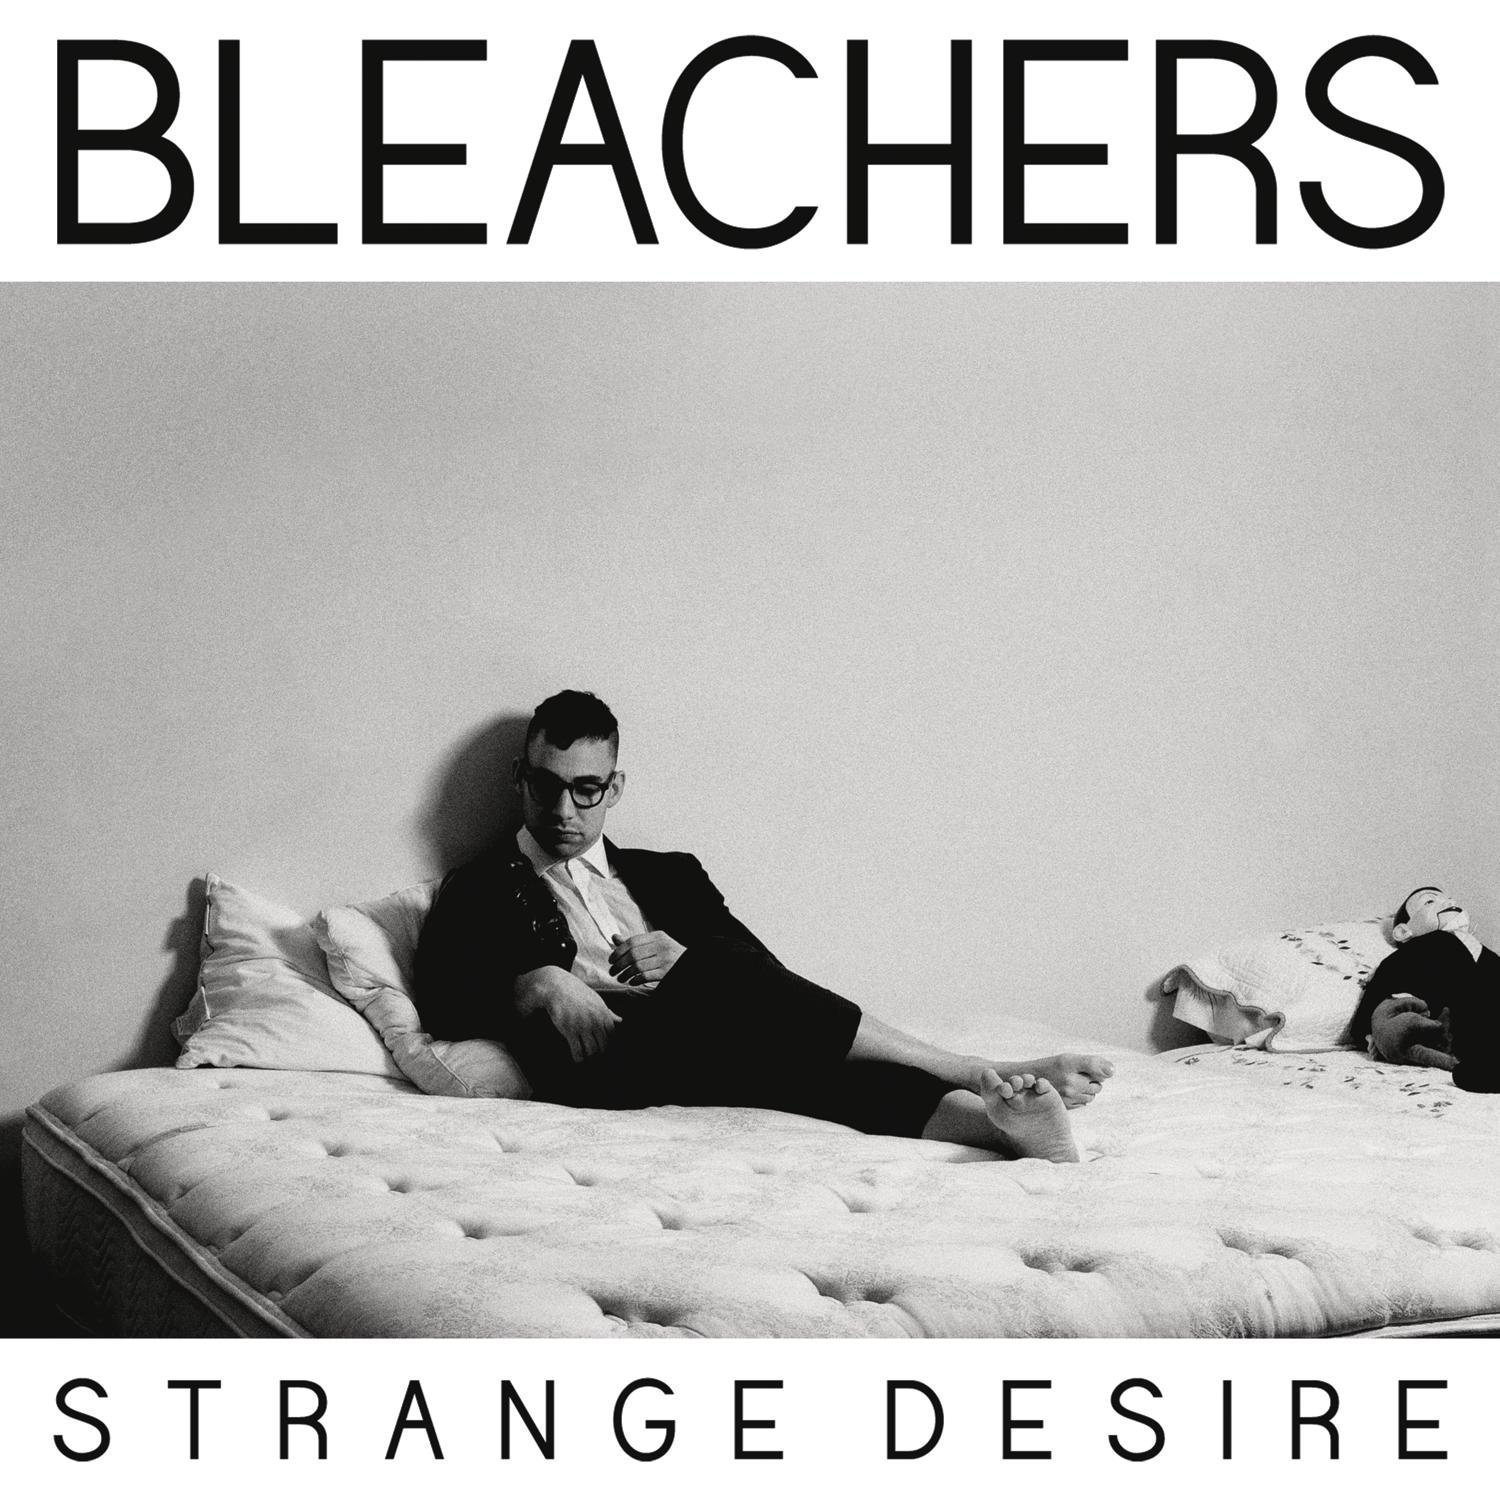 Bleachers - Strange Desire (Music CD)